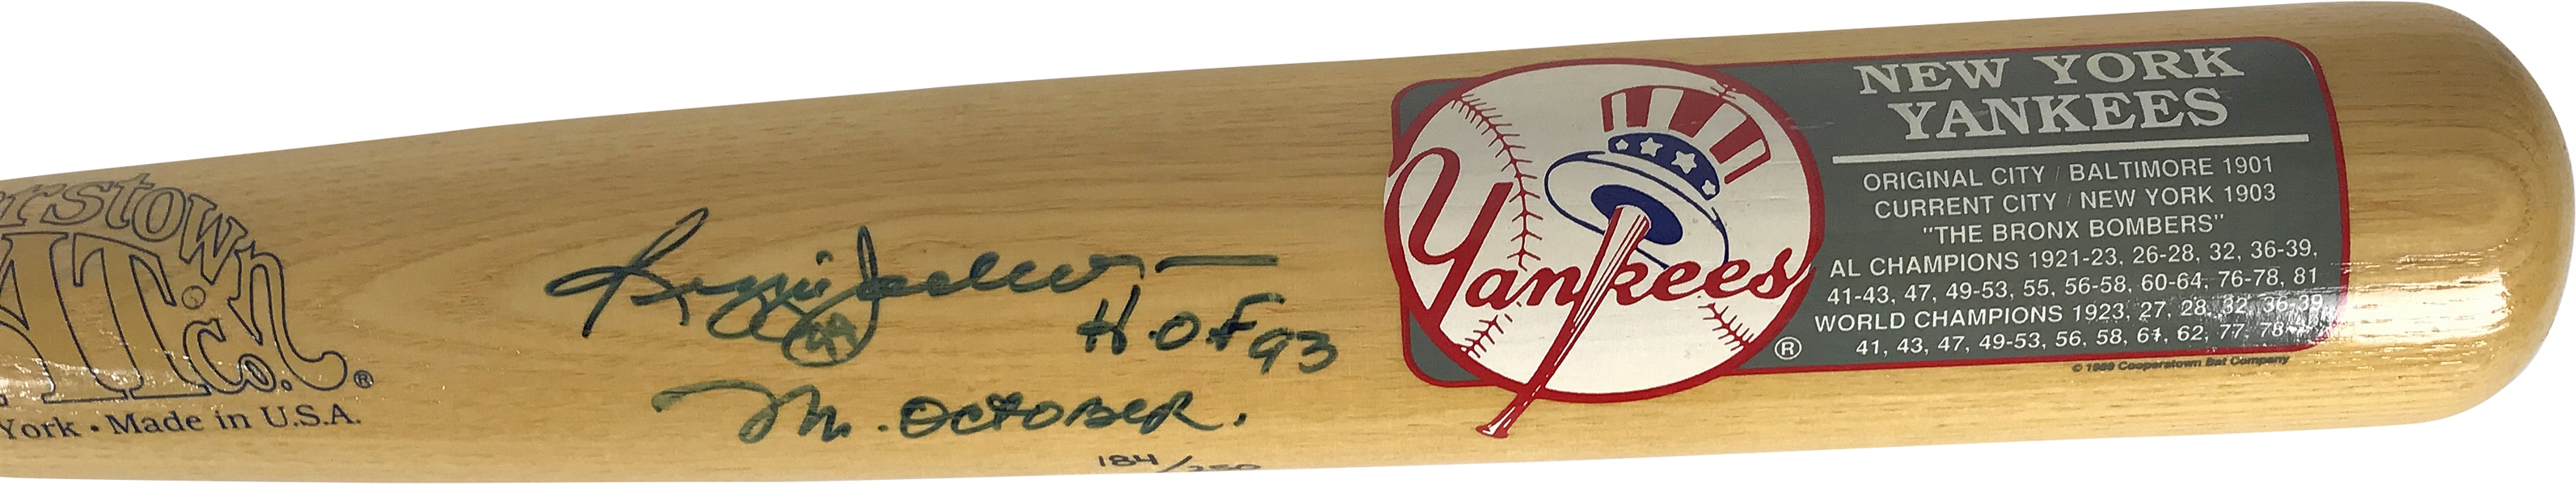 Reggie Jackson Signed & Inscribed "HOF 93, Mr October" Cooperstown Collection Baseball Bat (Upper Deck)